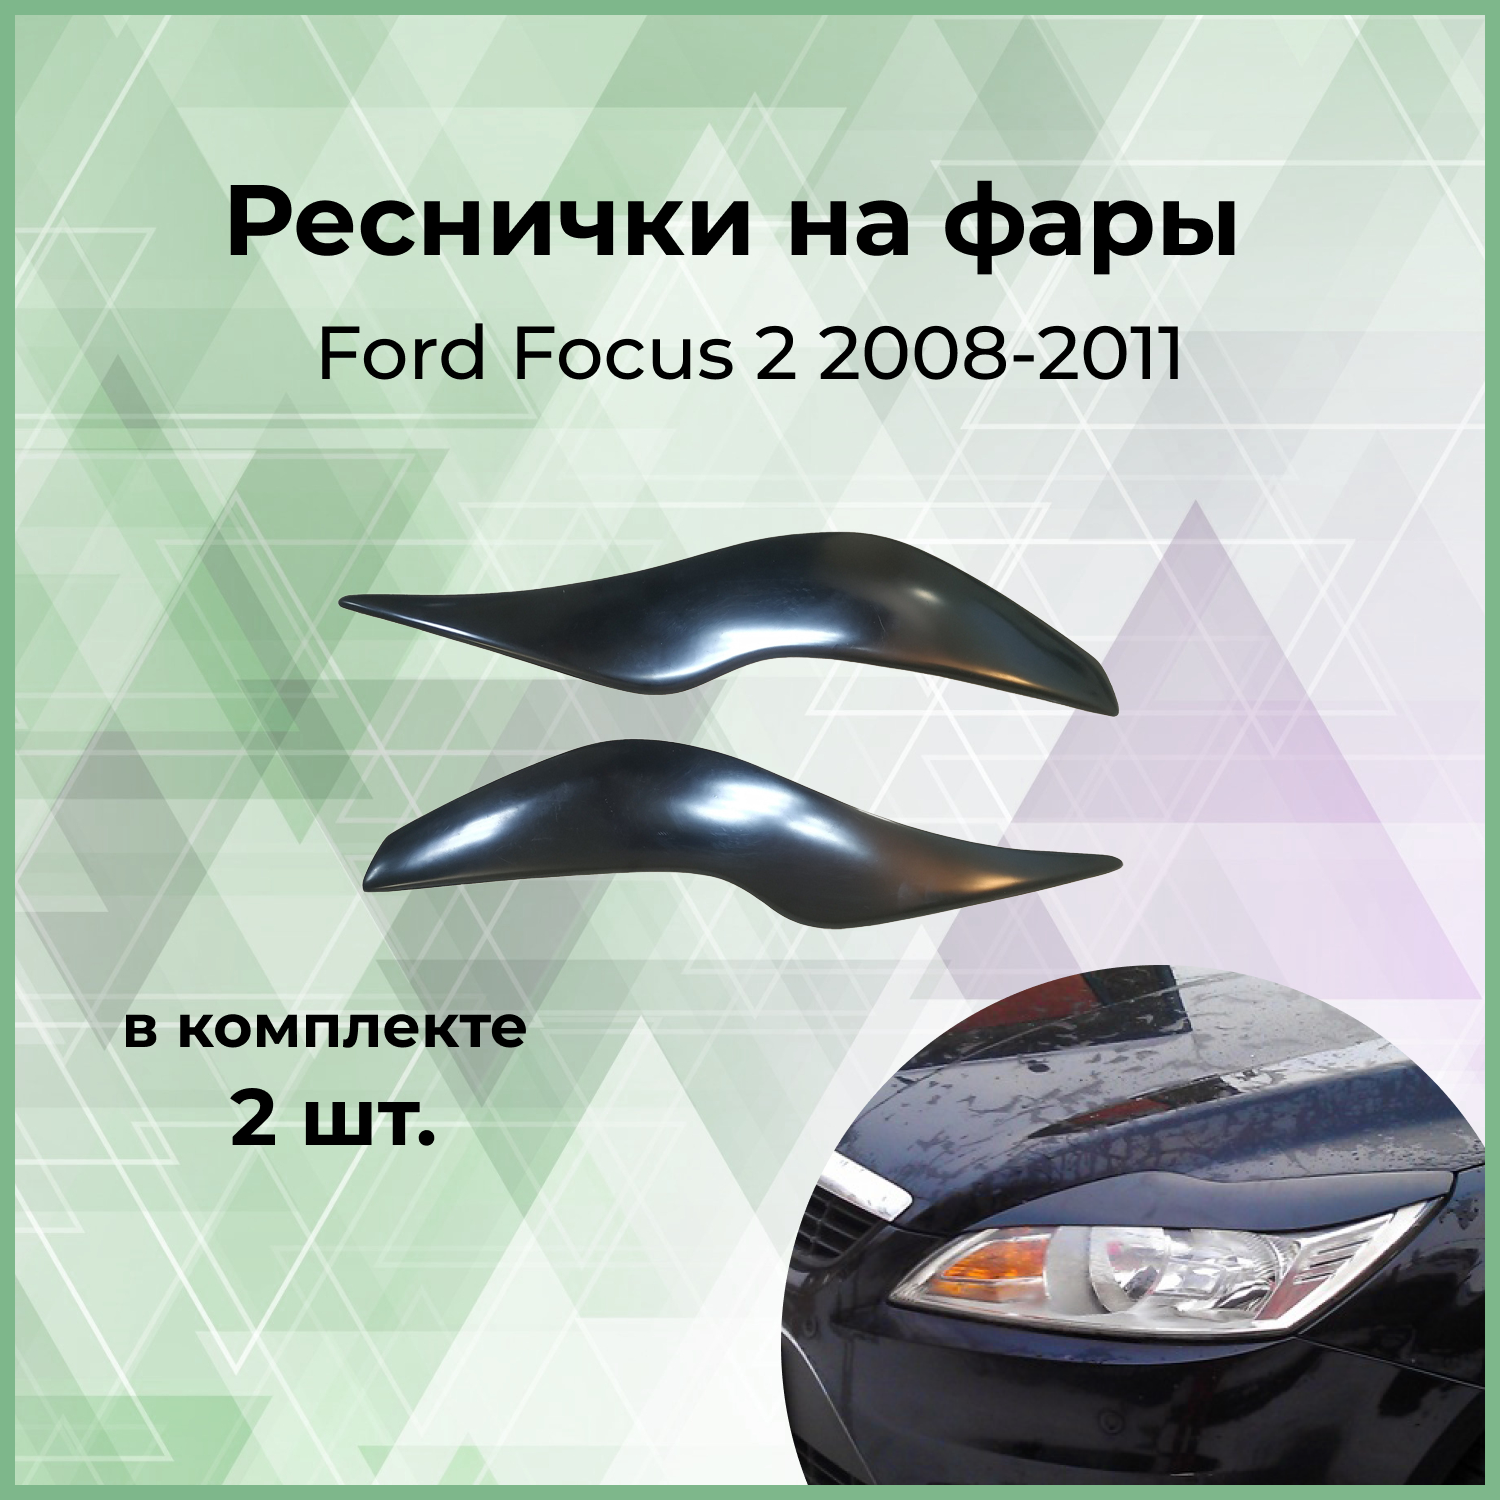 Накладки на фары (реснички) Forma'T для Ford Focus 2 2008-2011 г.в. рестайлинг